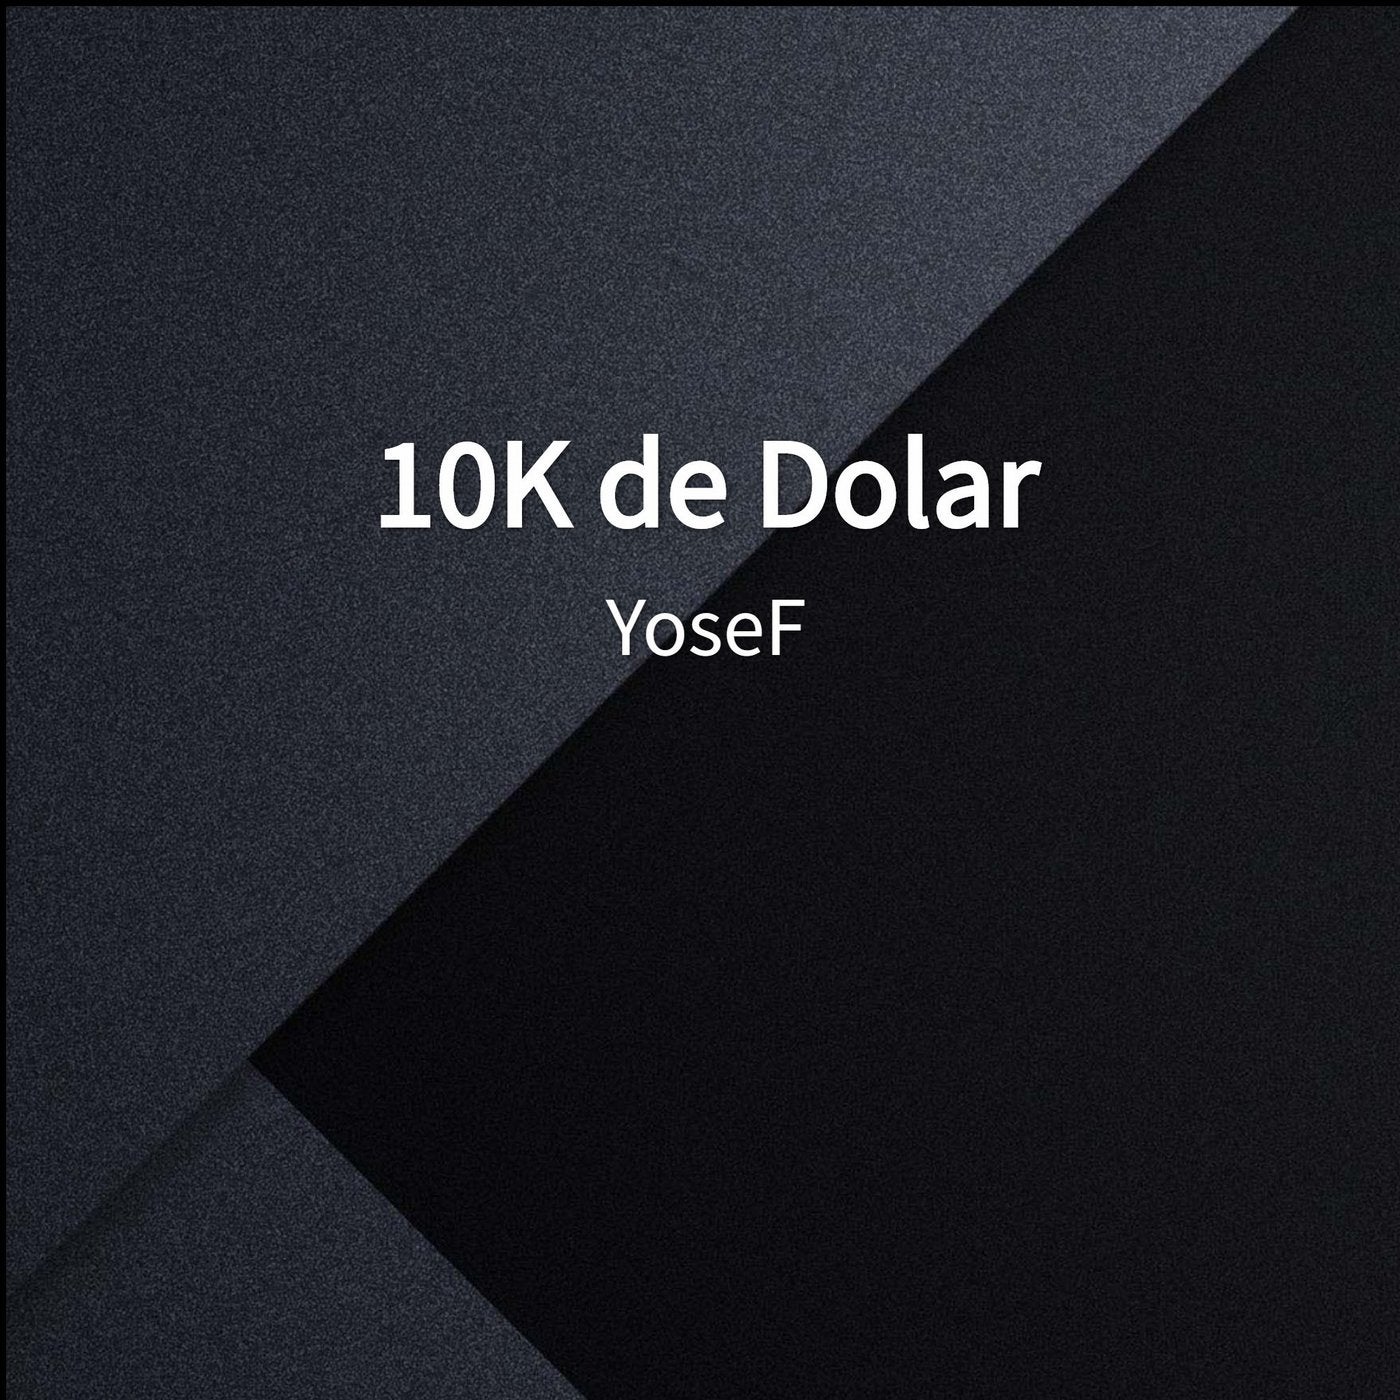 10K de Dolar